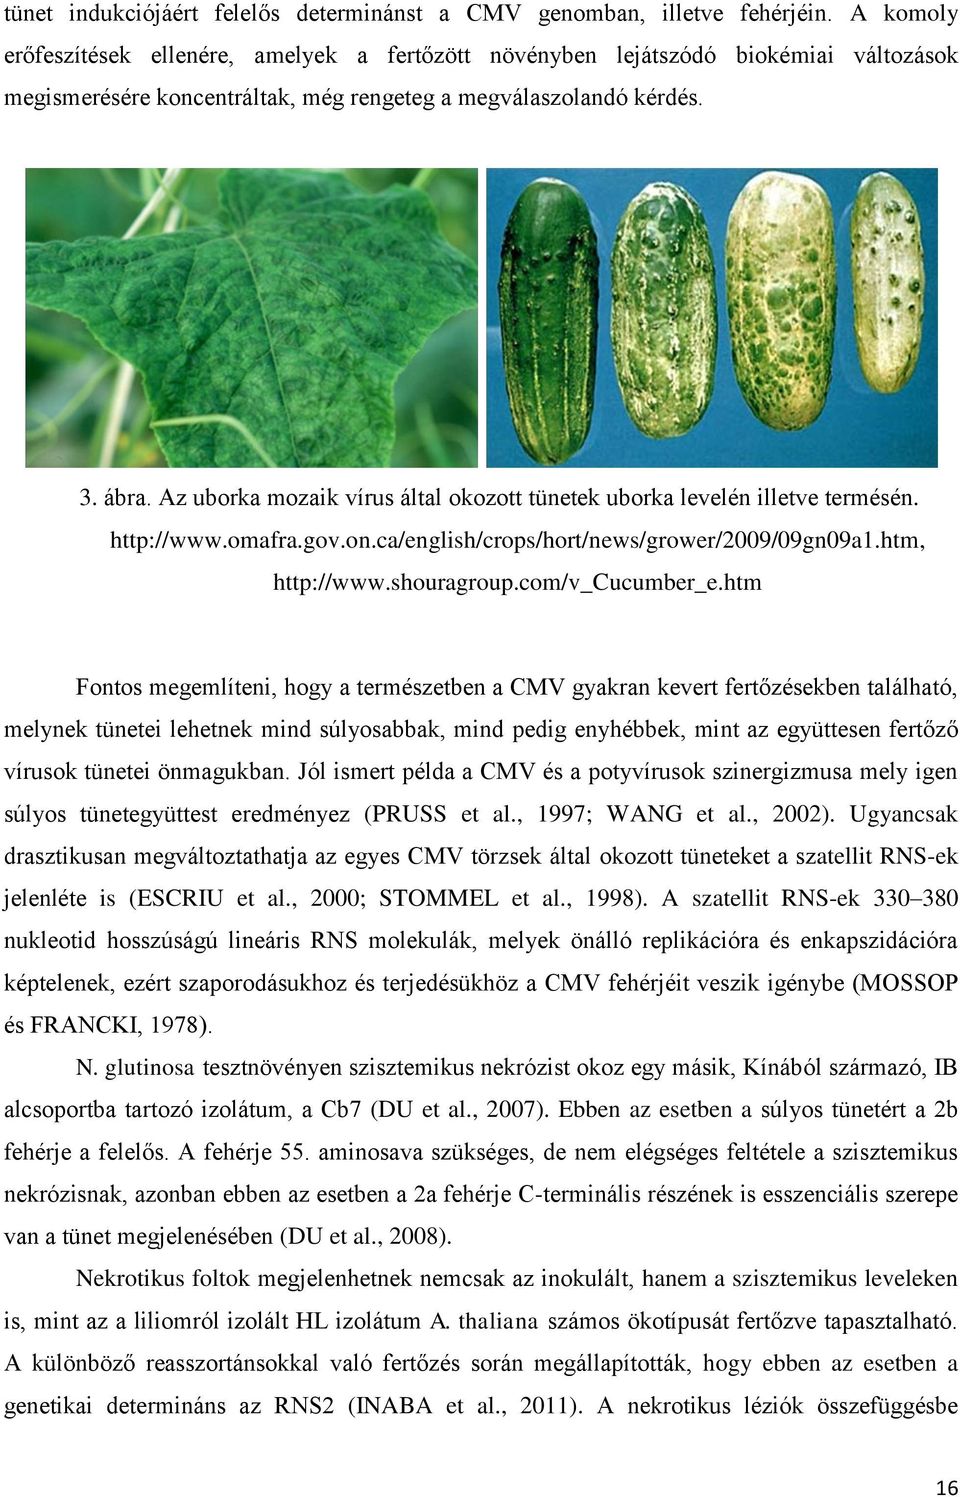 Az uborka mozaik vírus által okozott tünetek uborka levelén illetve termésén. http://www.omafra.gov.on.ca/english/crops/hort/news/grower/2009/09gn09a1.htm, http://www.shouragroup.com/v_cucumber_e.